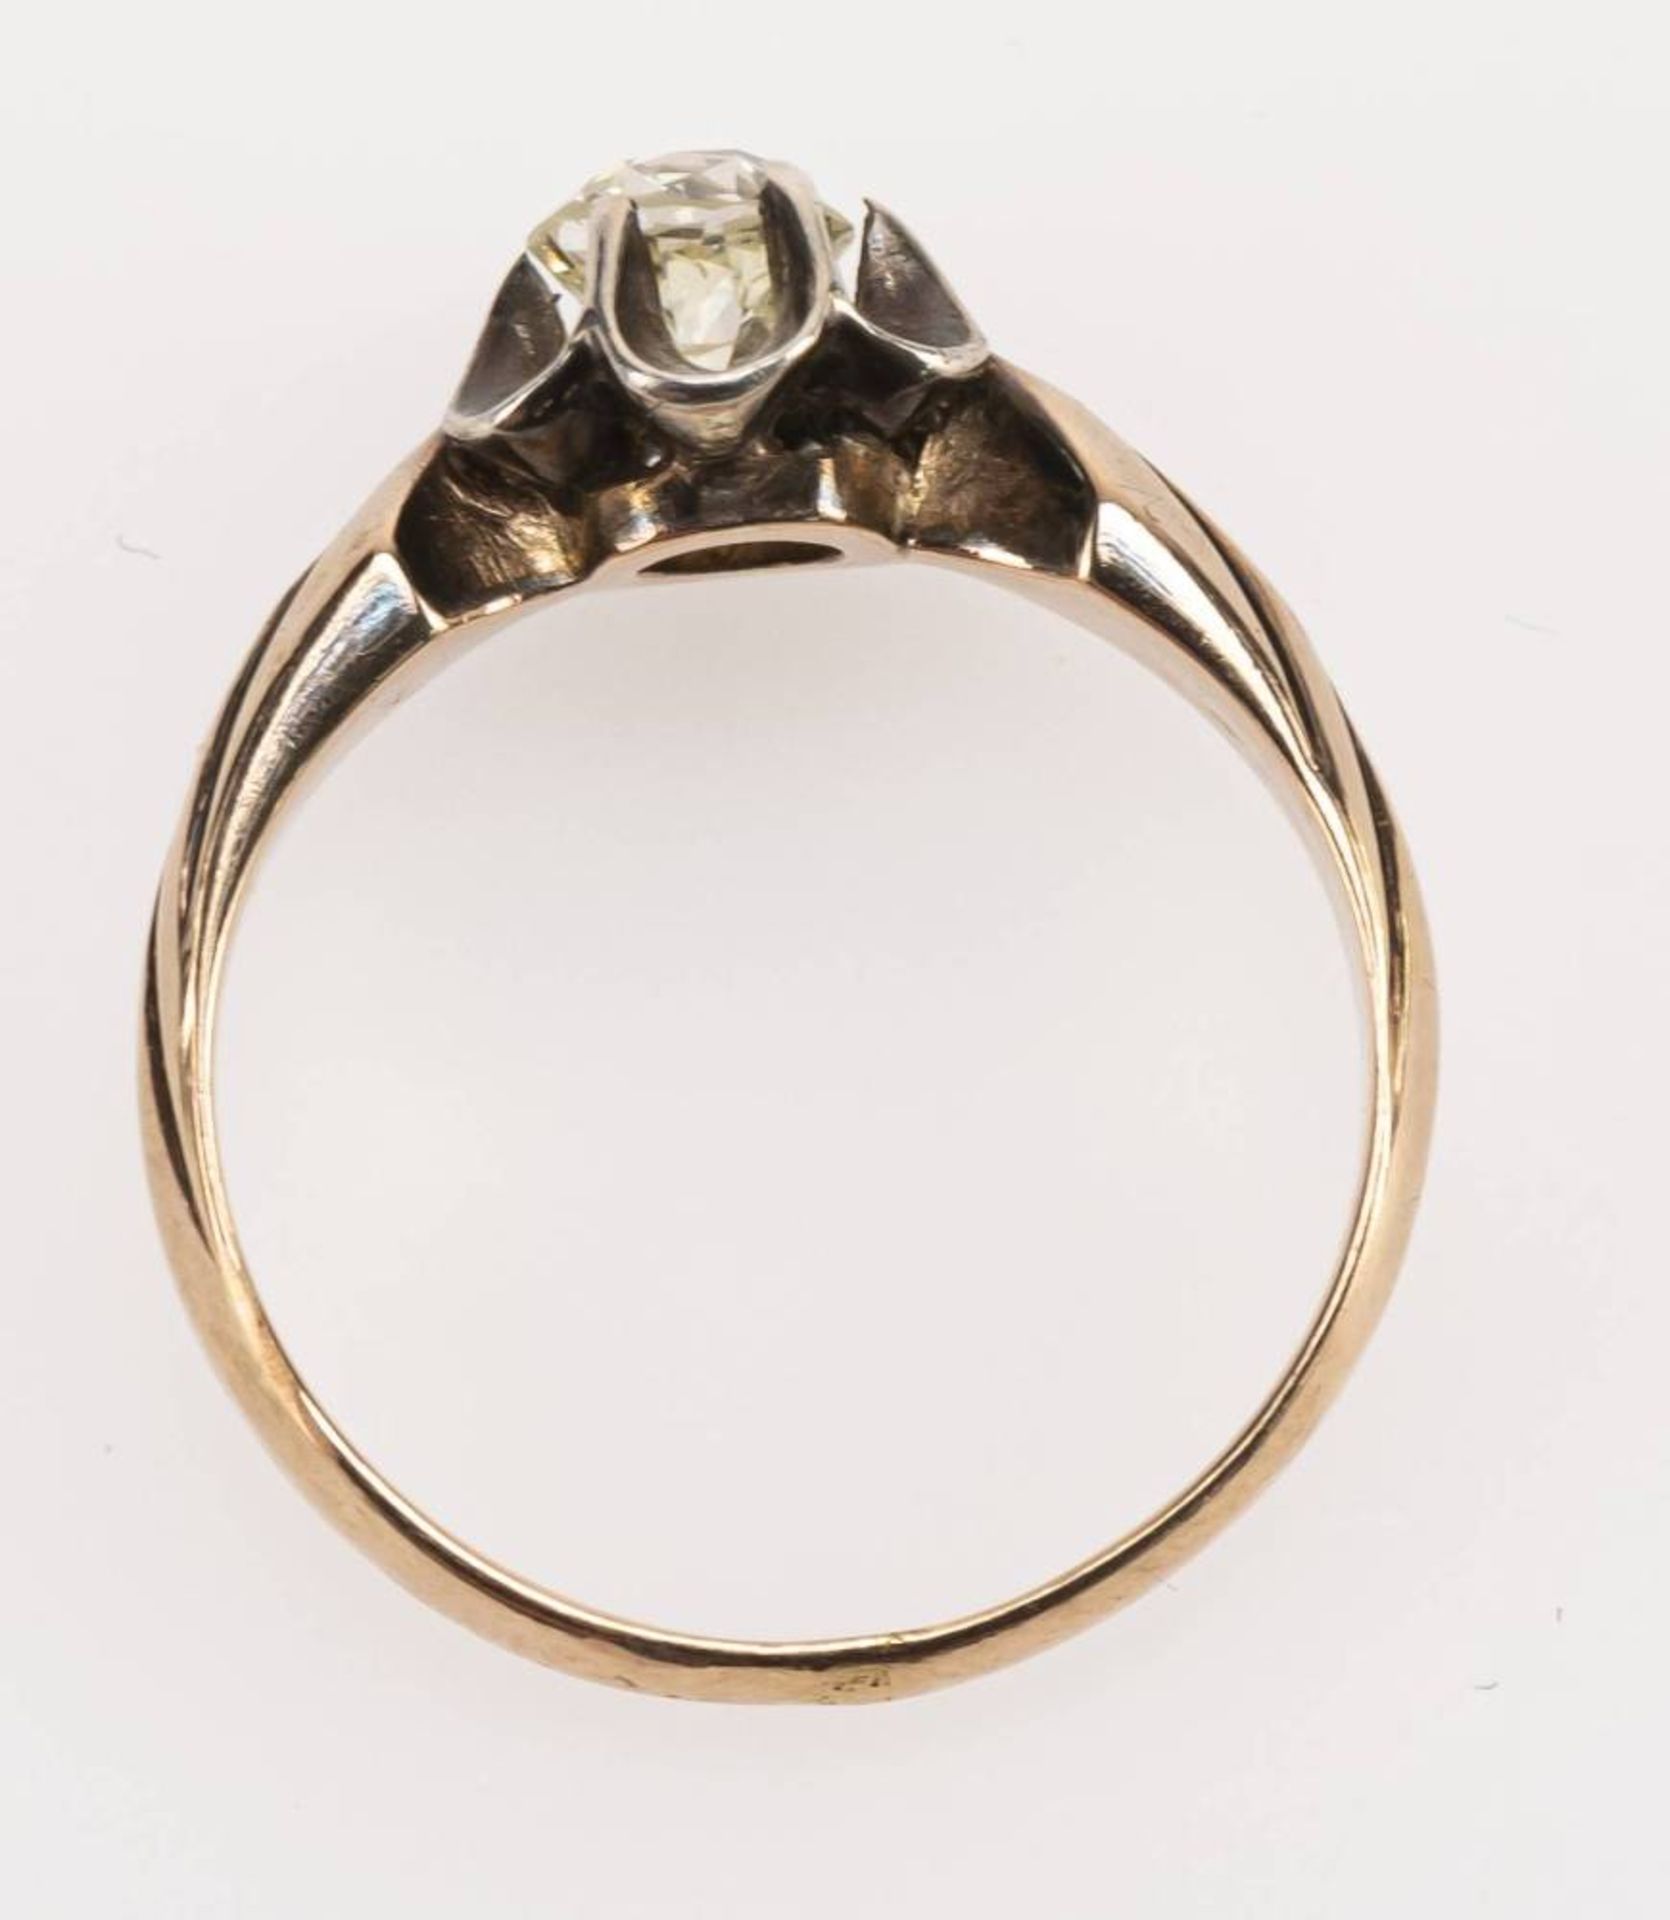 Diamant Solitär Ring, 585 Rotgold, altschliff Diamant von ca. 0,4 ct, sichtbare Lötstelle, RW 50, - Image 3 of 4